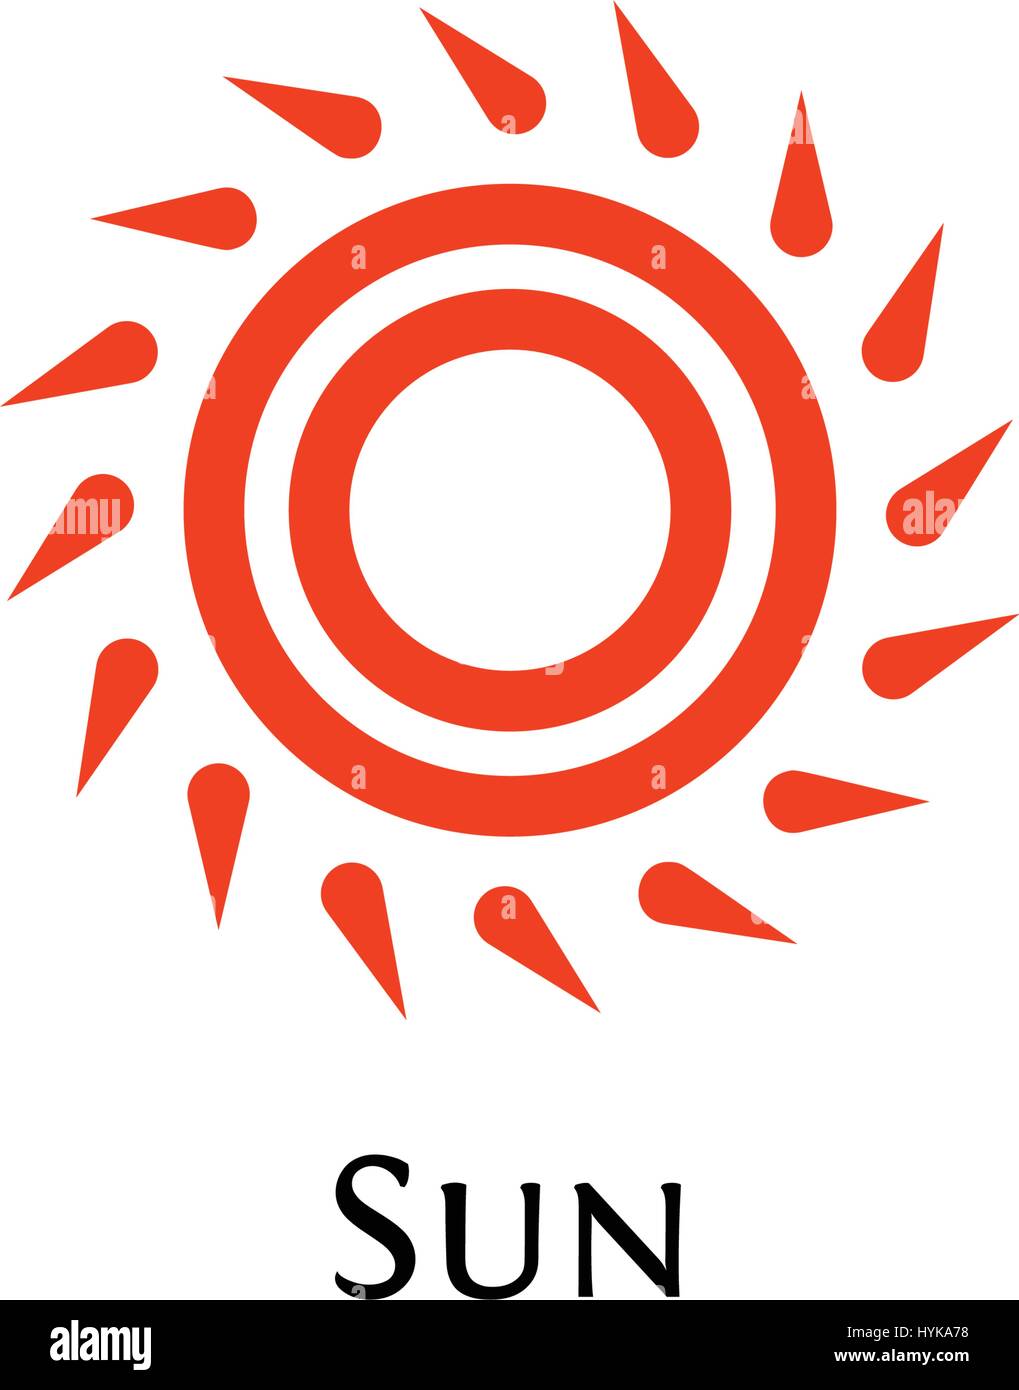 Isolierte abstrakt Runde Form Farbe orange Logo, Sonne-Logo-Vektor-illustration Stock Vektor